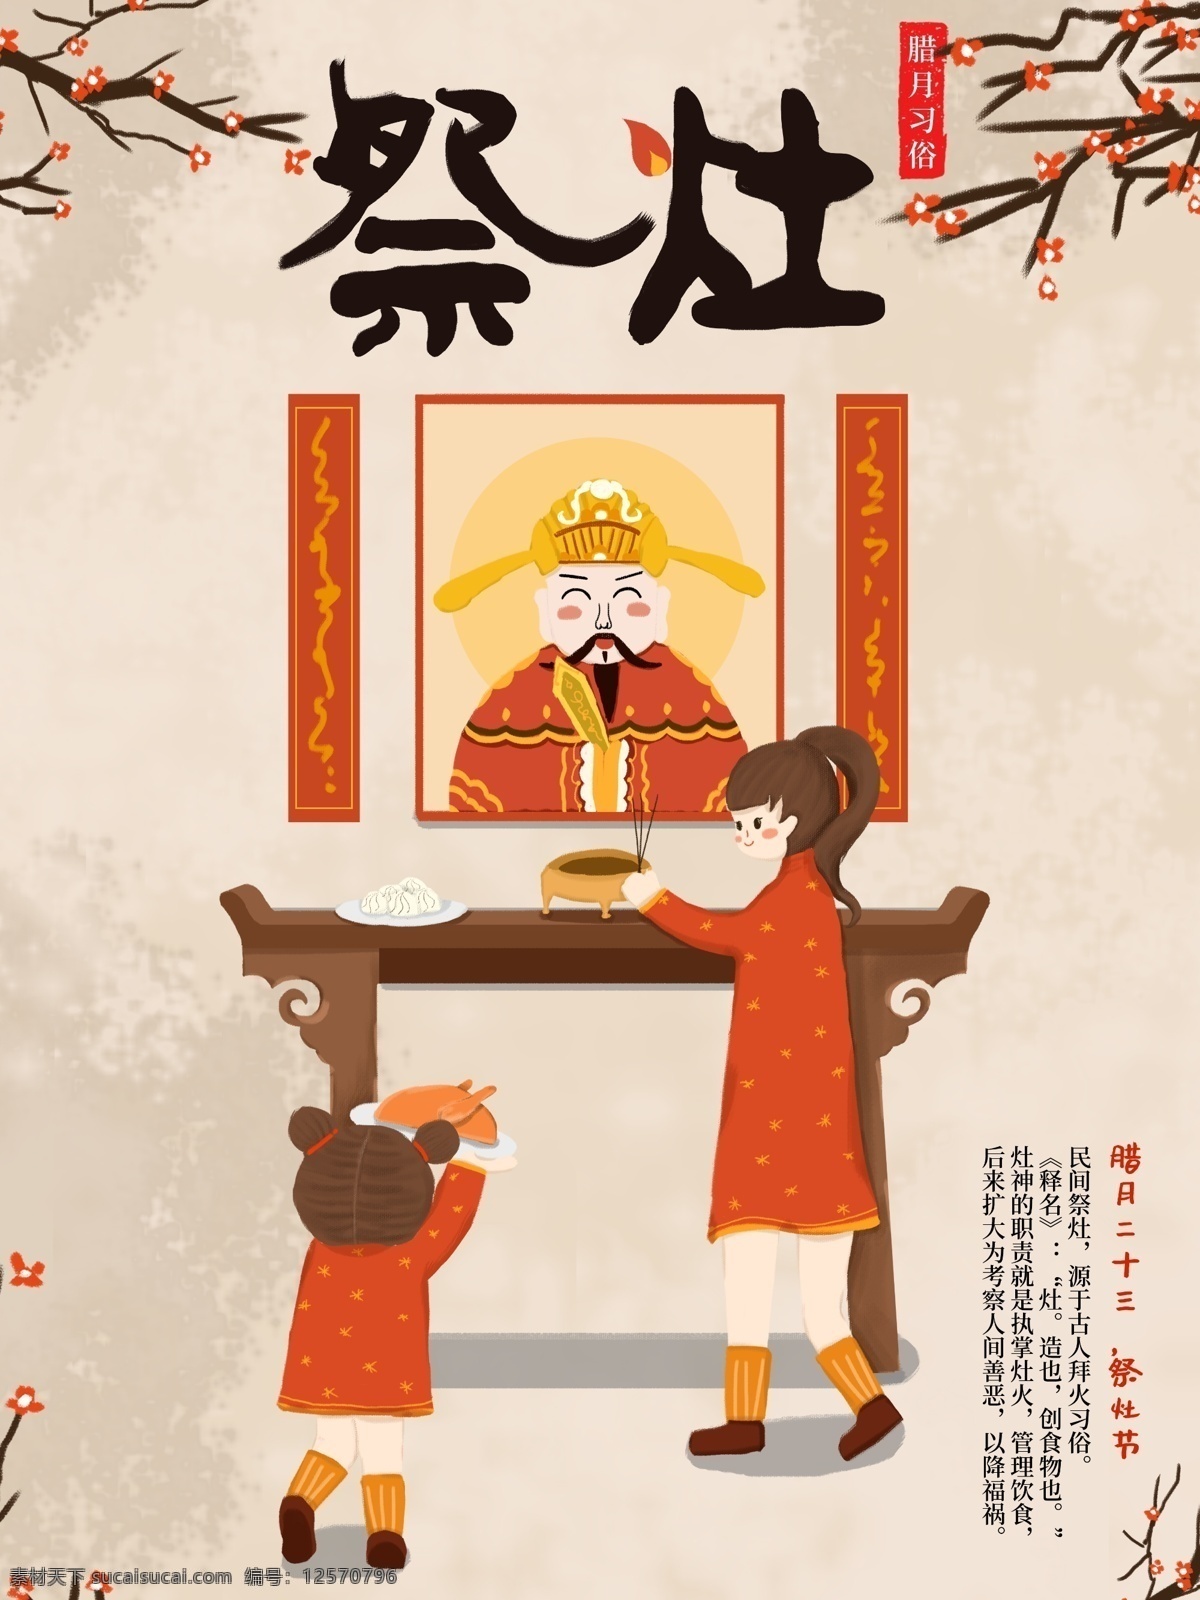 原创 手绘 插画 祭灶 节日 腊月 习俗 海报 卡通 中国传统 过年 祭灶节 二十三 风俗习惯 新年